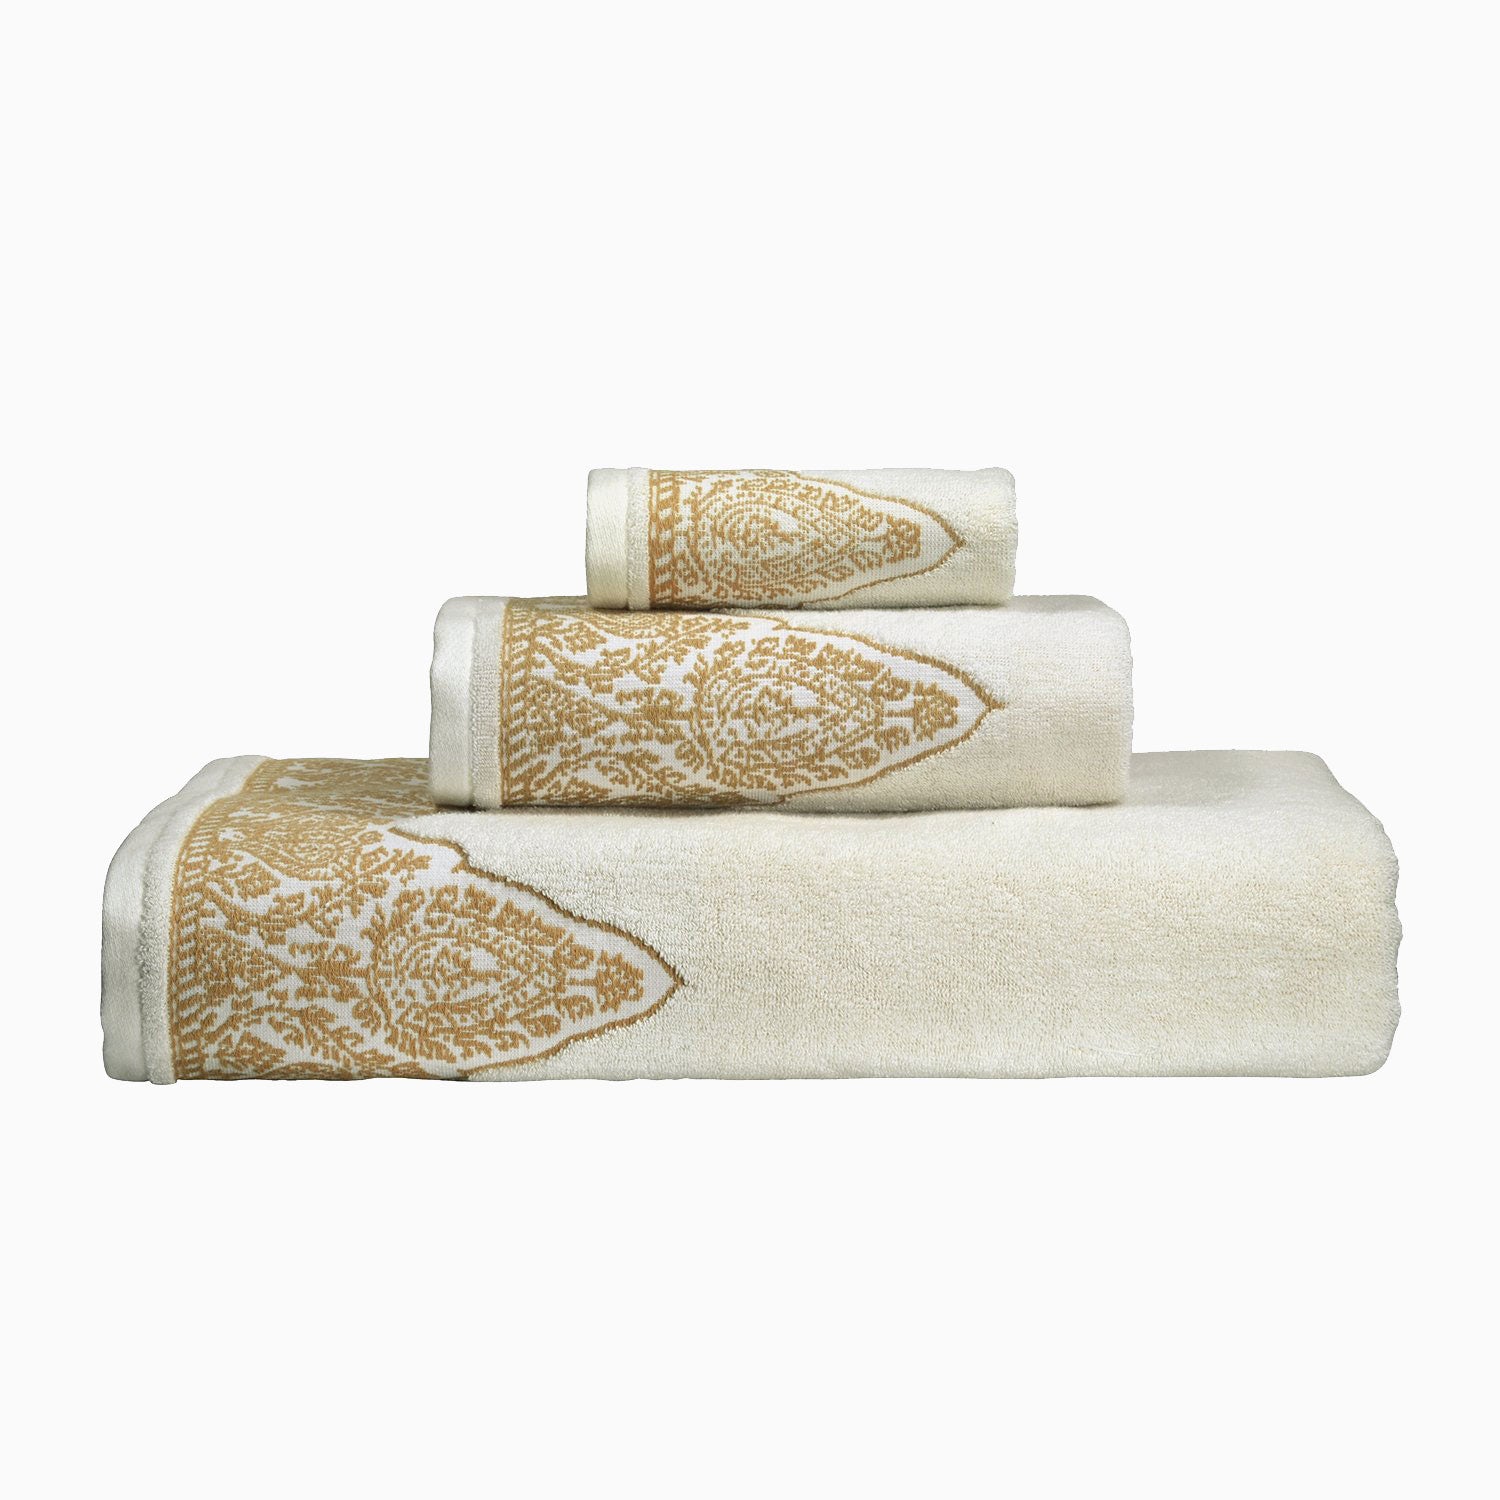 Gold Luxury Bath Towels Decorative Bath Towel for Gold Bathroom